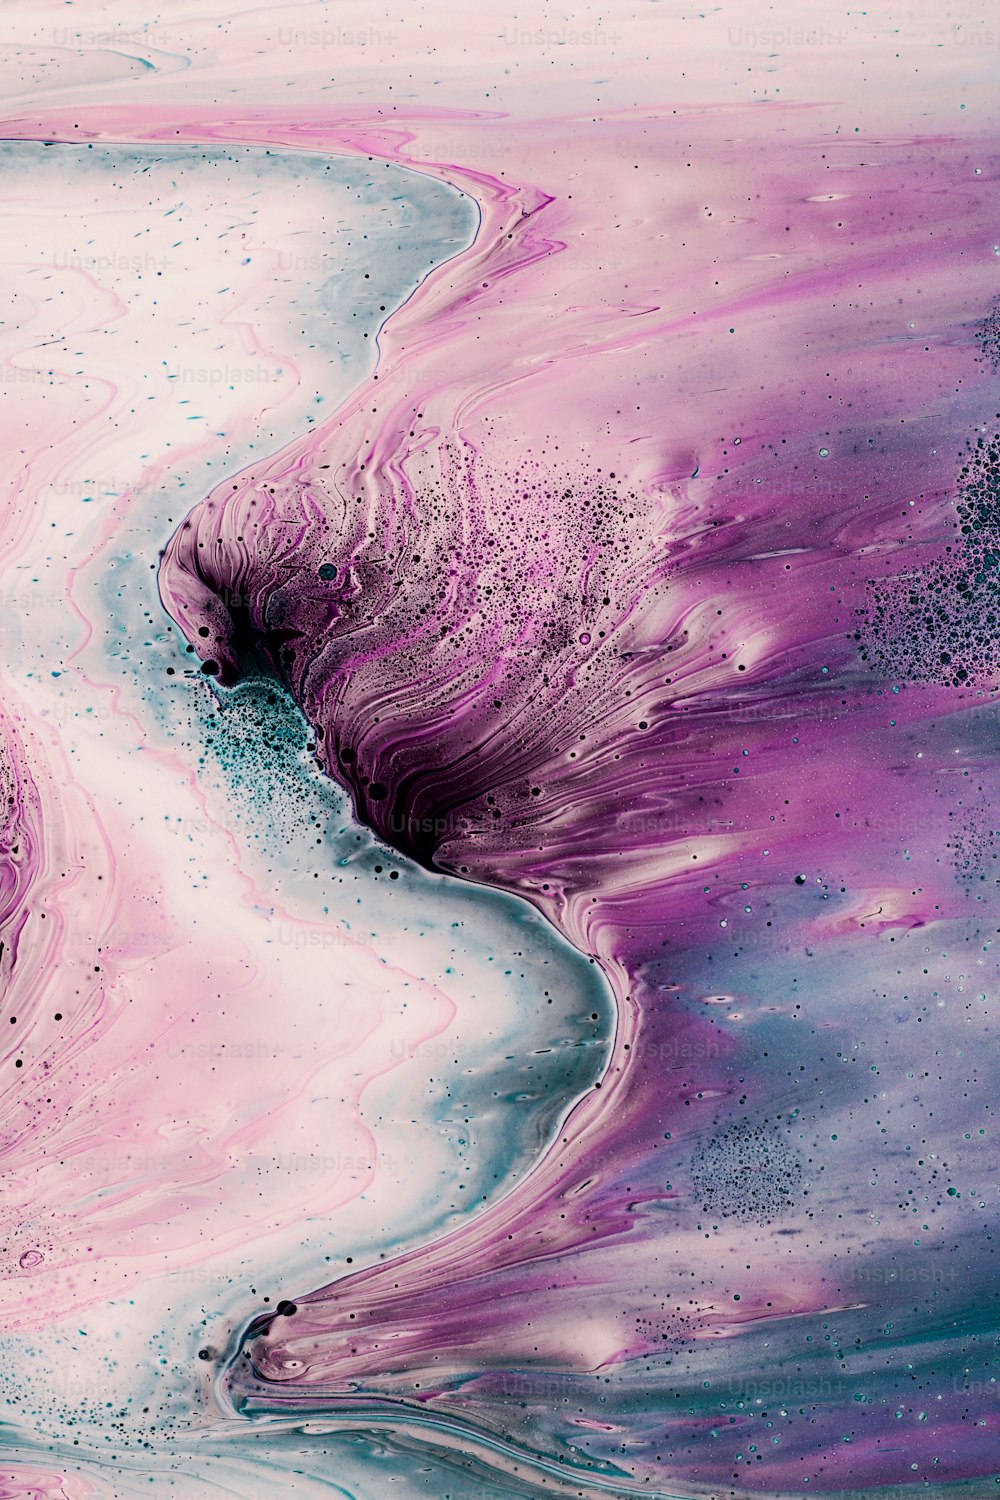 Una pintura abstracta con colores púrpura y azul